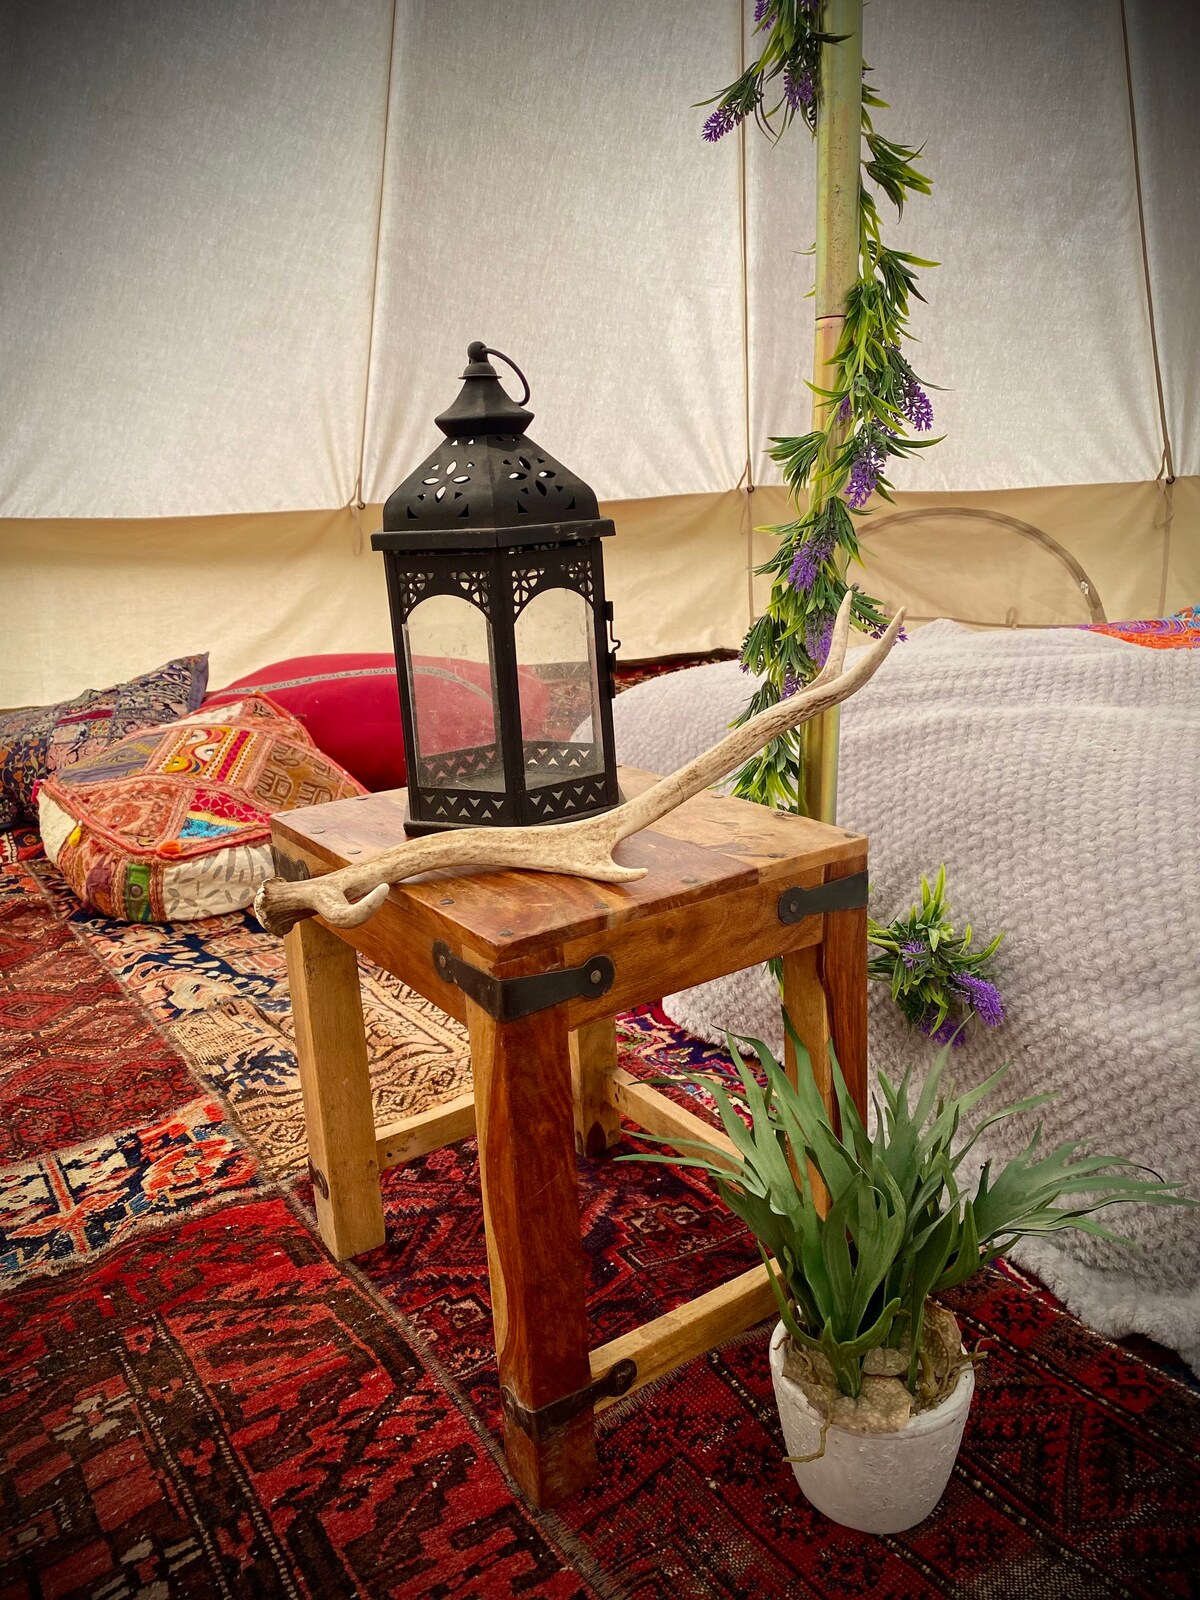 田园诗般的Eskdale印度主题4米钟形帐篷